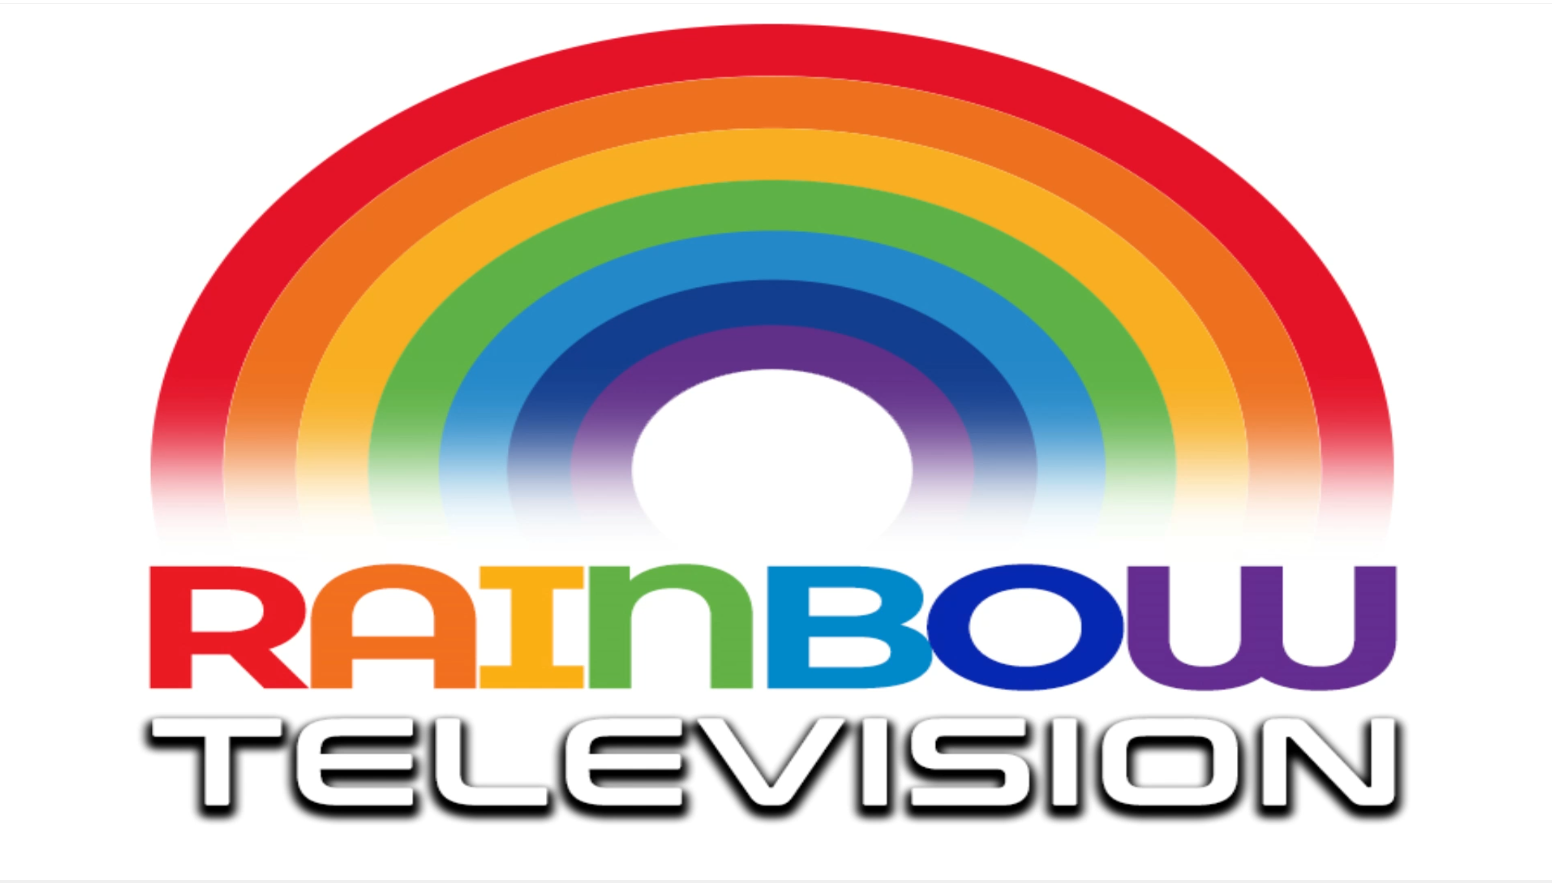 rainbowtelevision.tv